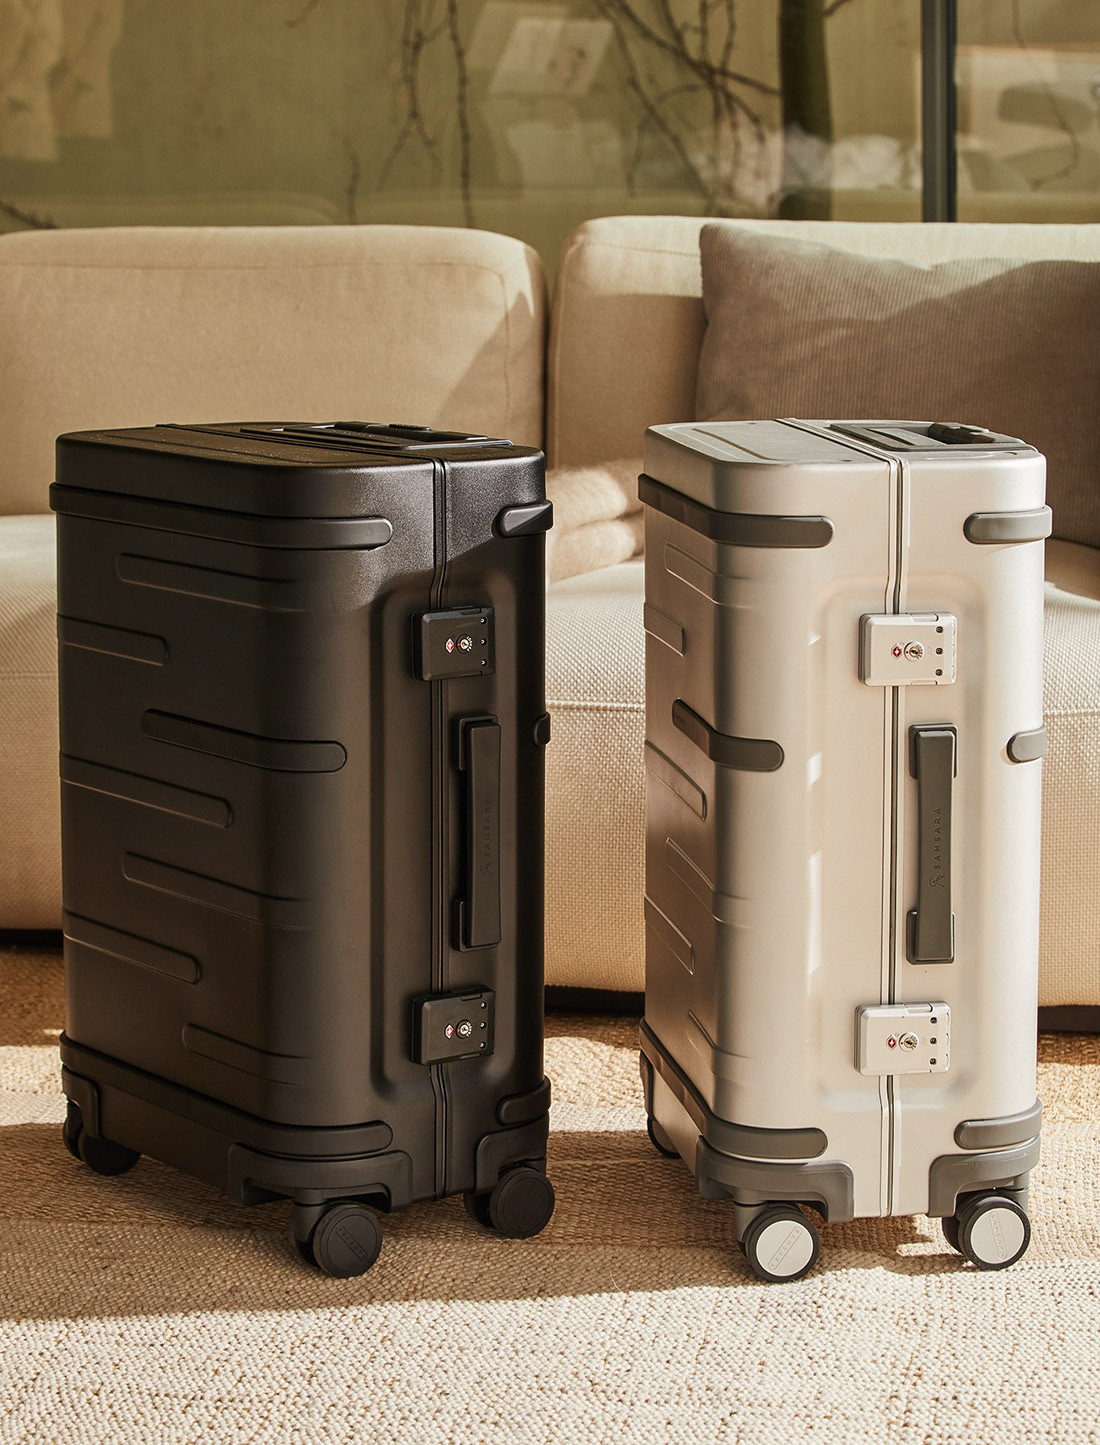 Smart aluminum suitcases